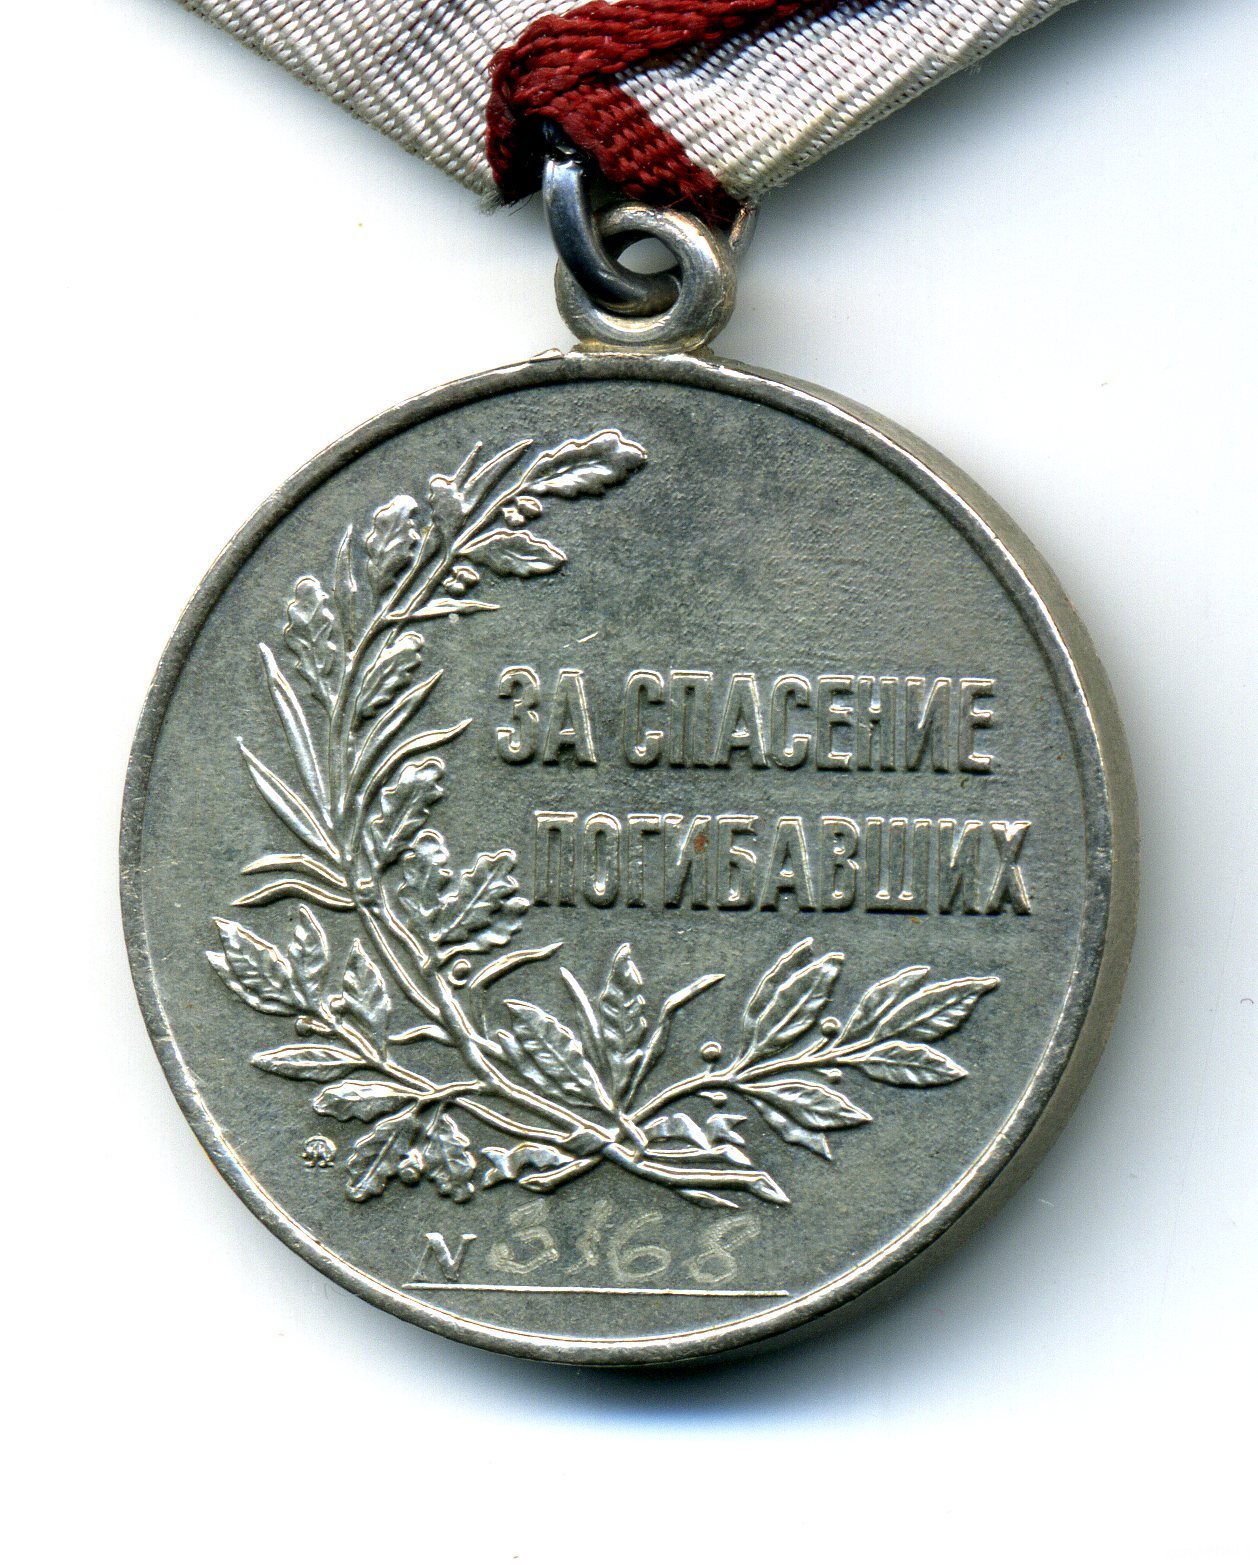 Реверс государственной медали "За спасение погибавших"